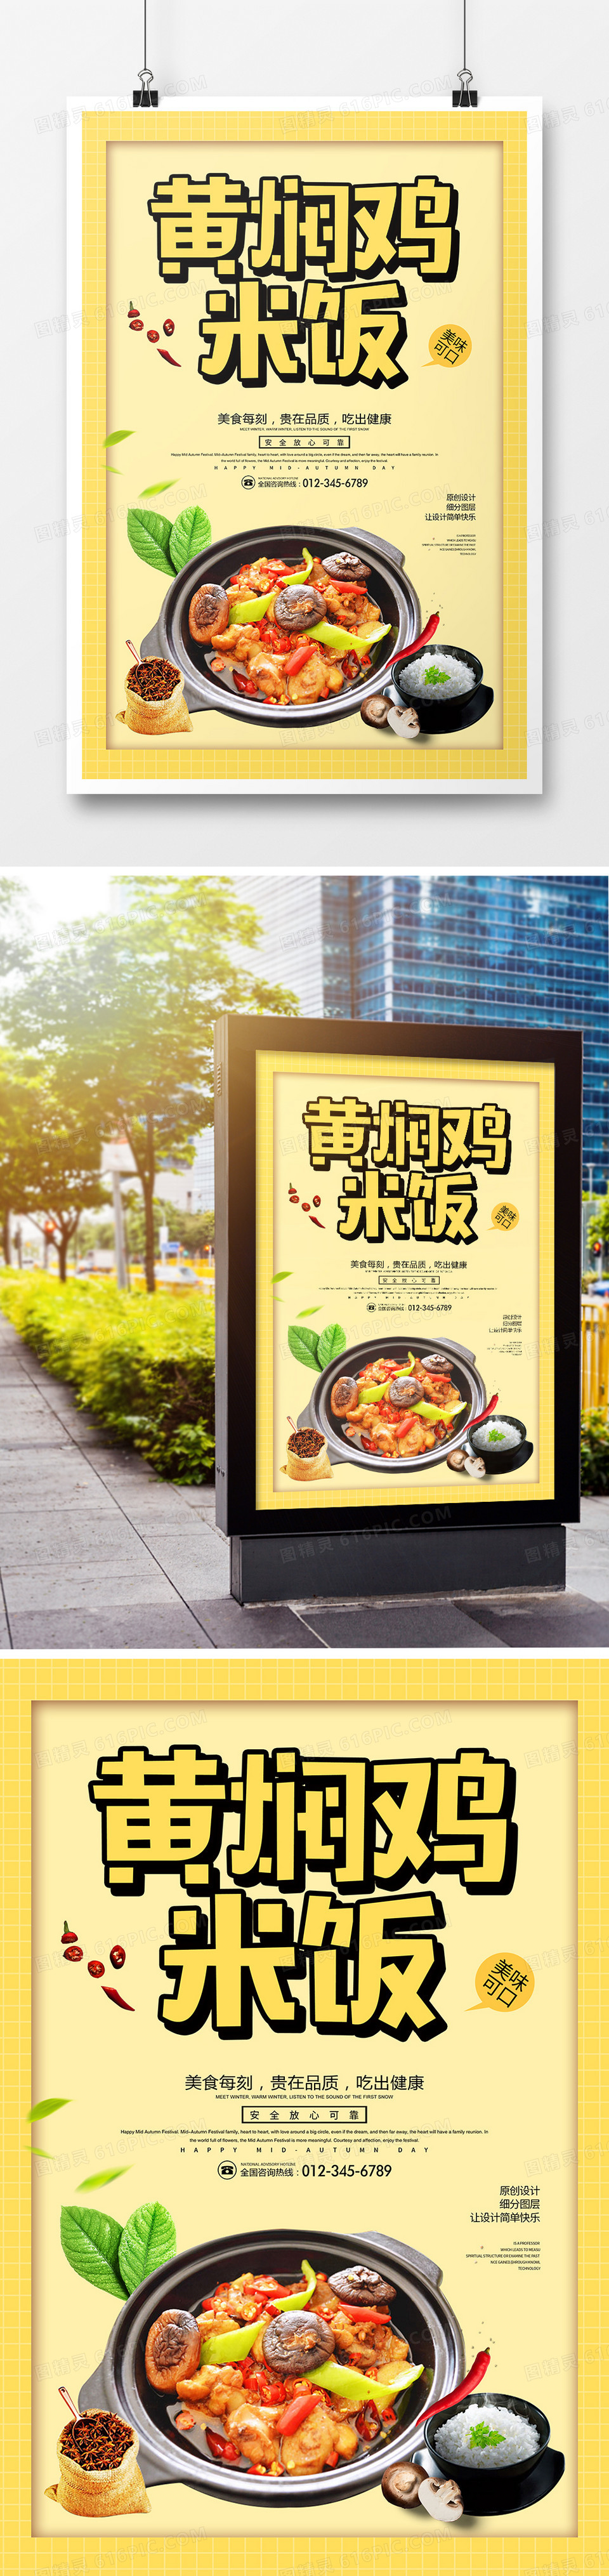 简约黄焖鸡米饭宣传海报